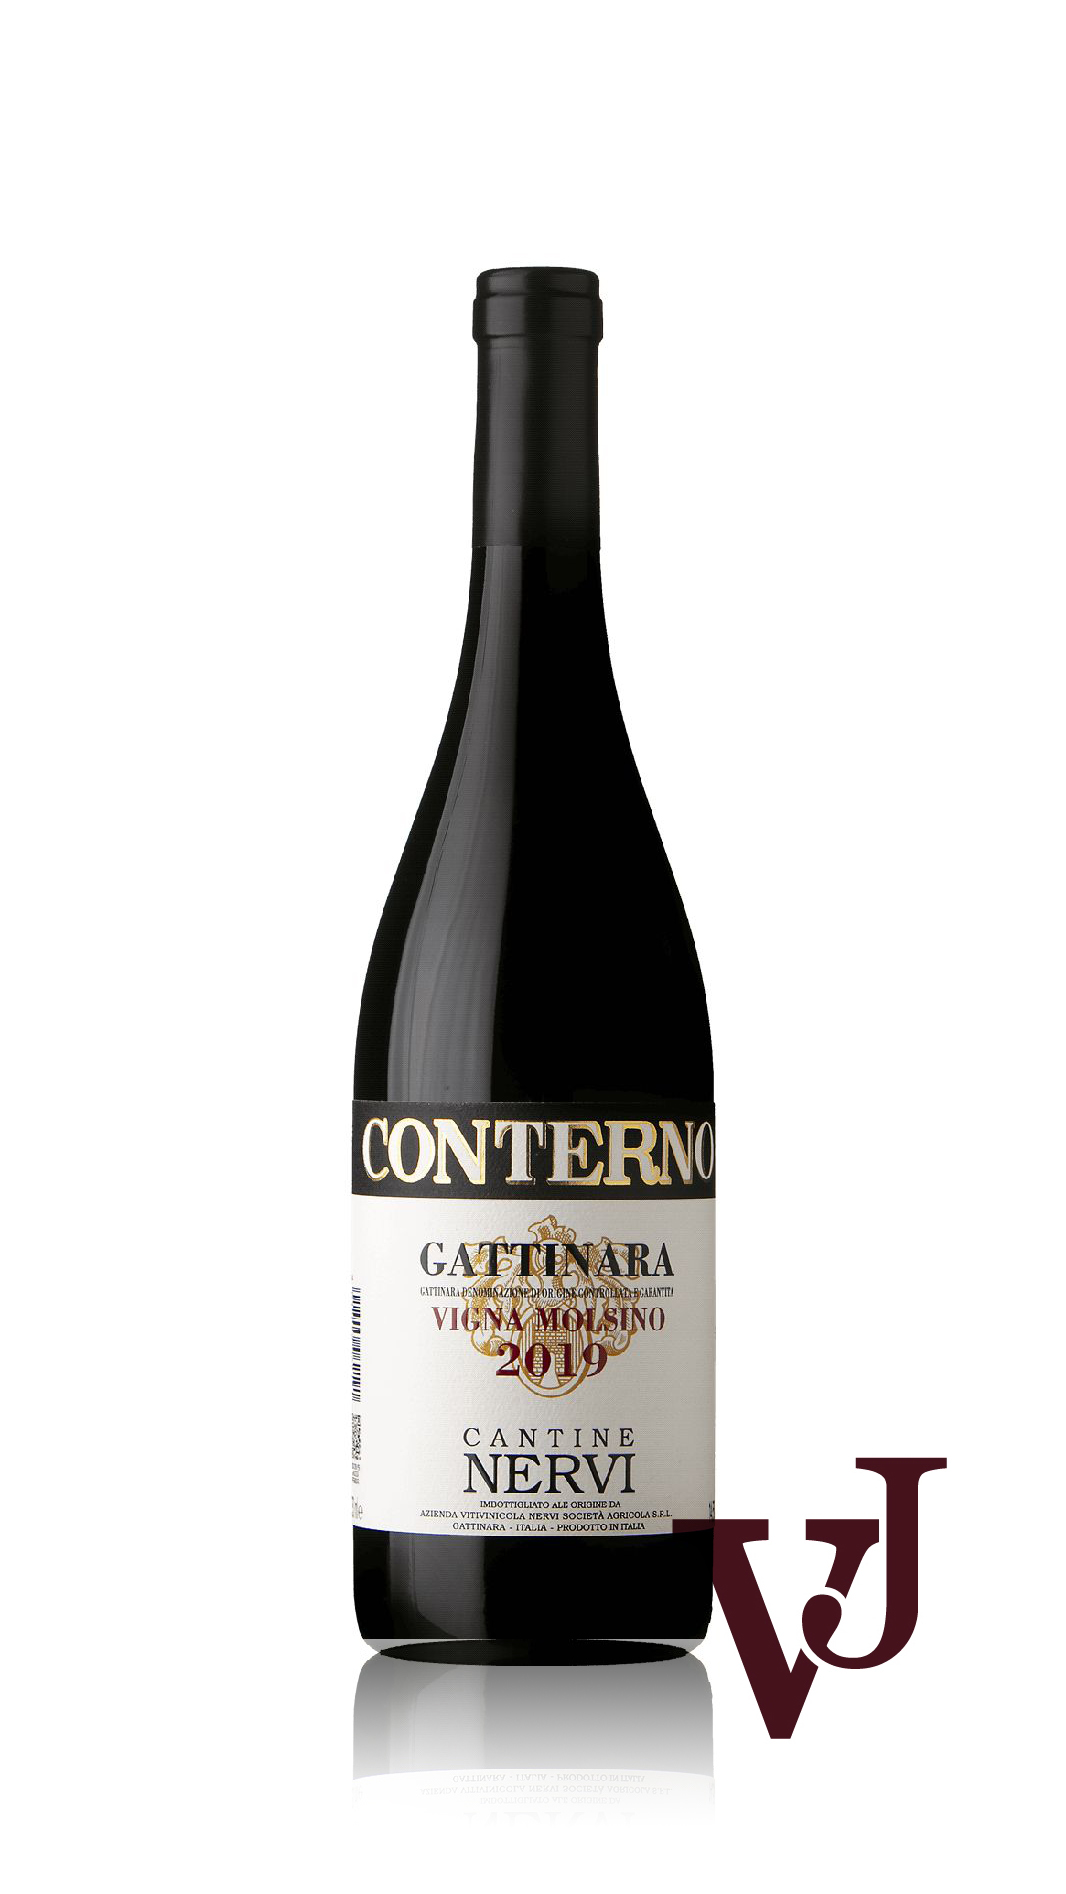 Rött Vin - Conterno Gattinara Vigna Molsino Cantine Nervi 2019 artikel nummer 9424701 från producenten AZIENDA VITIVINICOLA CONTERNO GATTINARA CANTINE NERVI SOC. AGR. SRL från området Italien